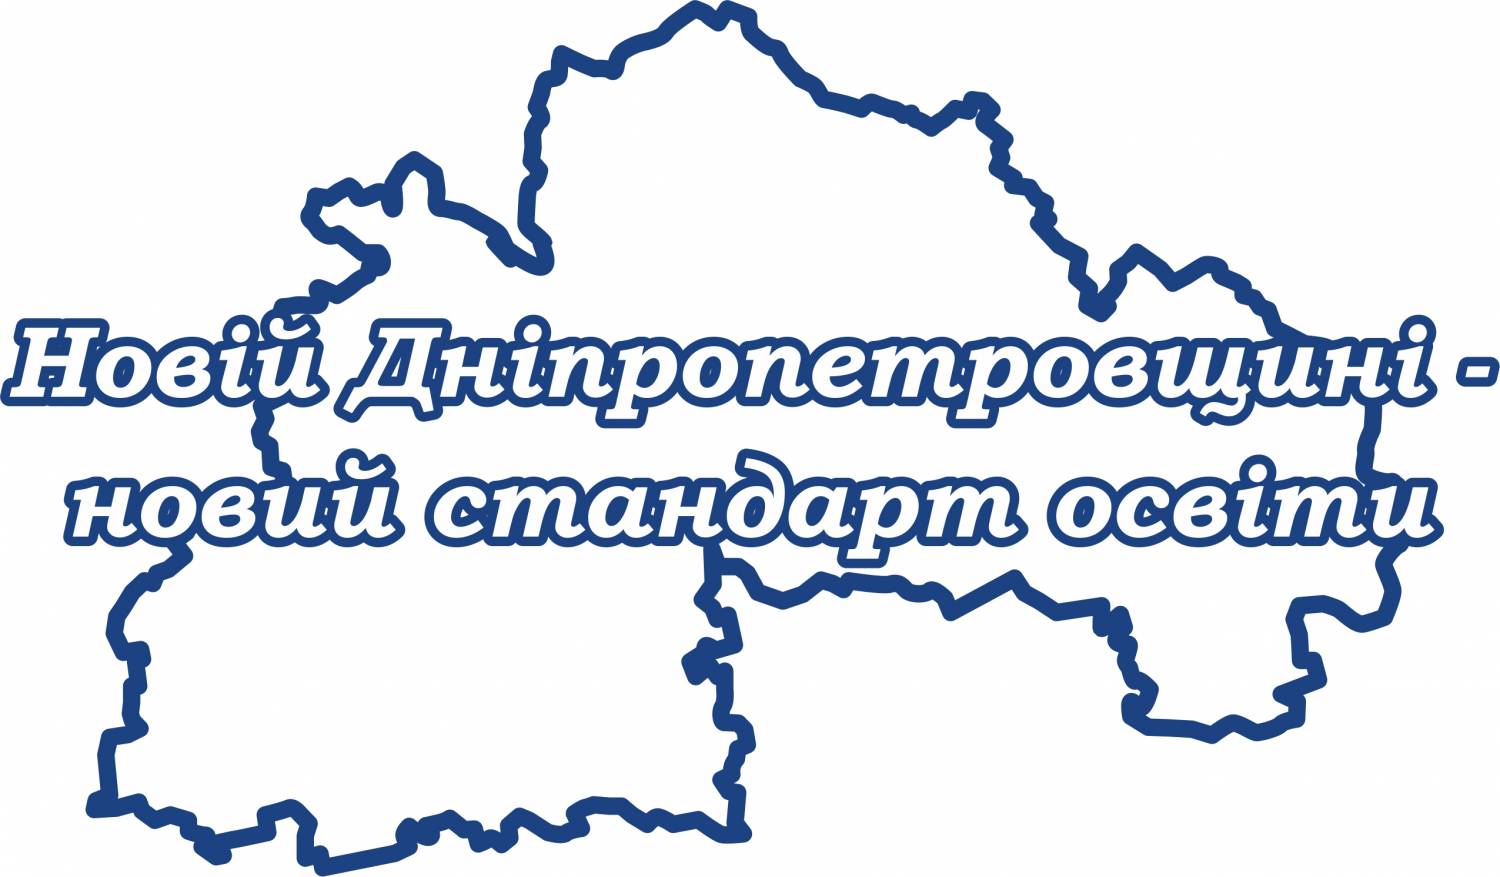 "Новій Дніпропетровщині - новий стандарт освіти"